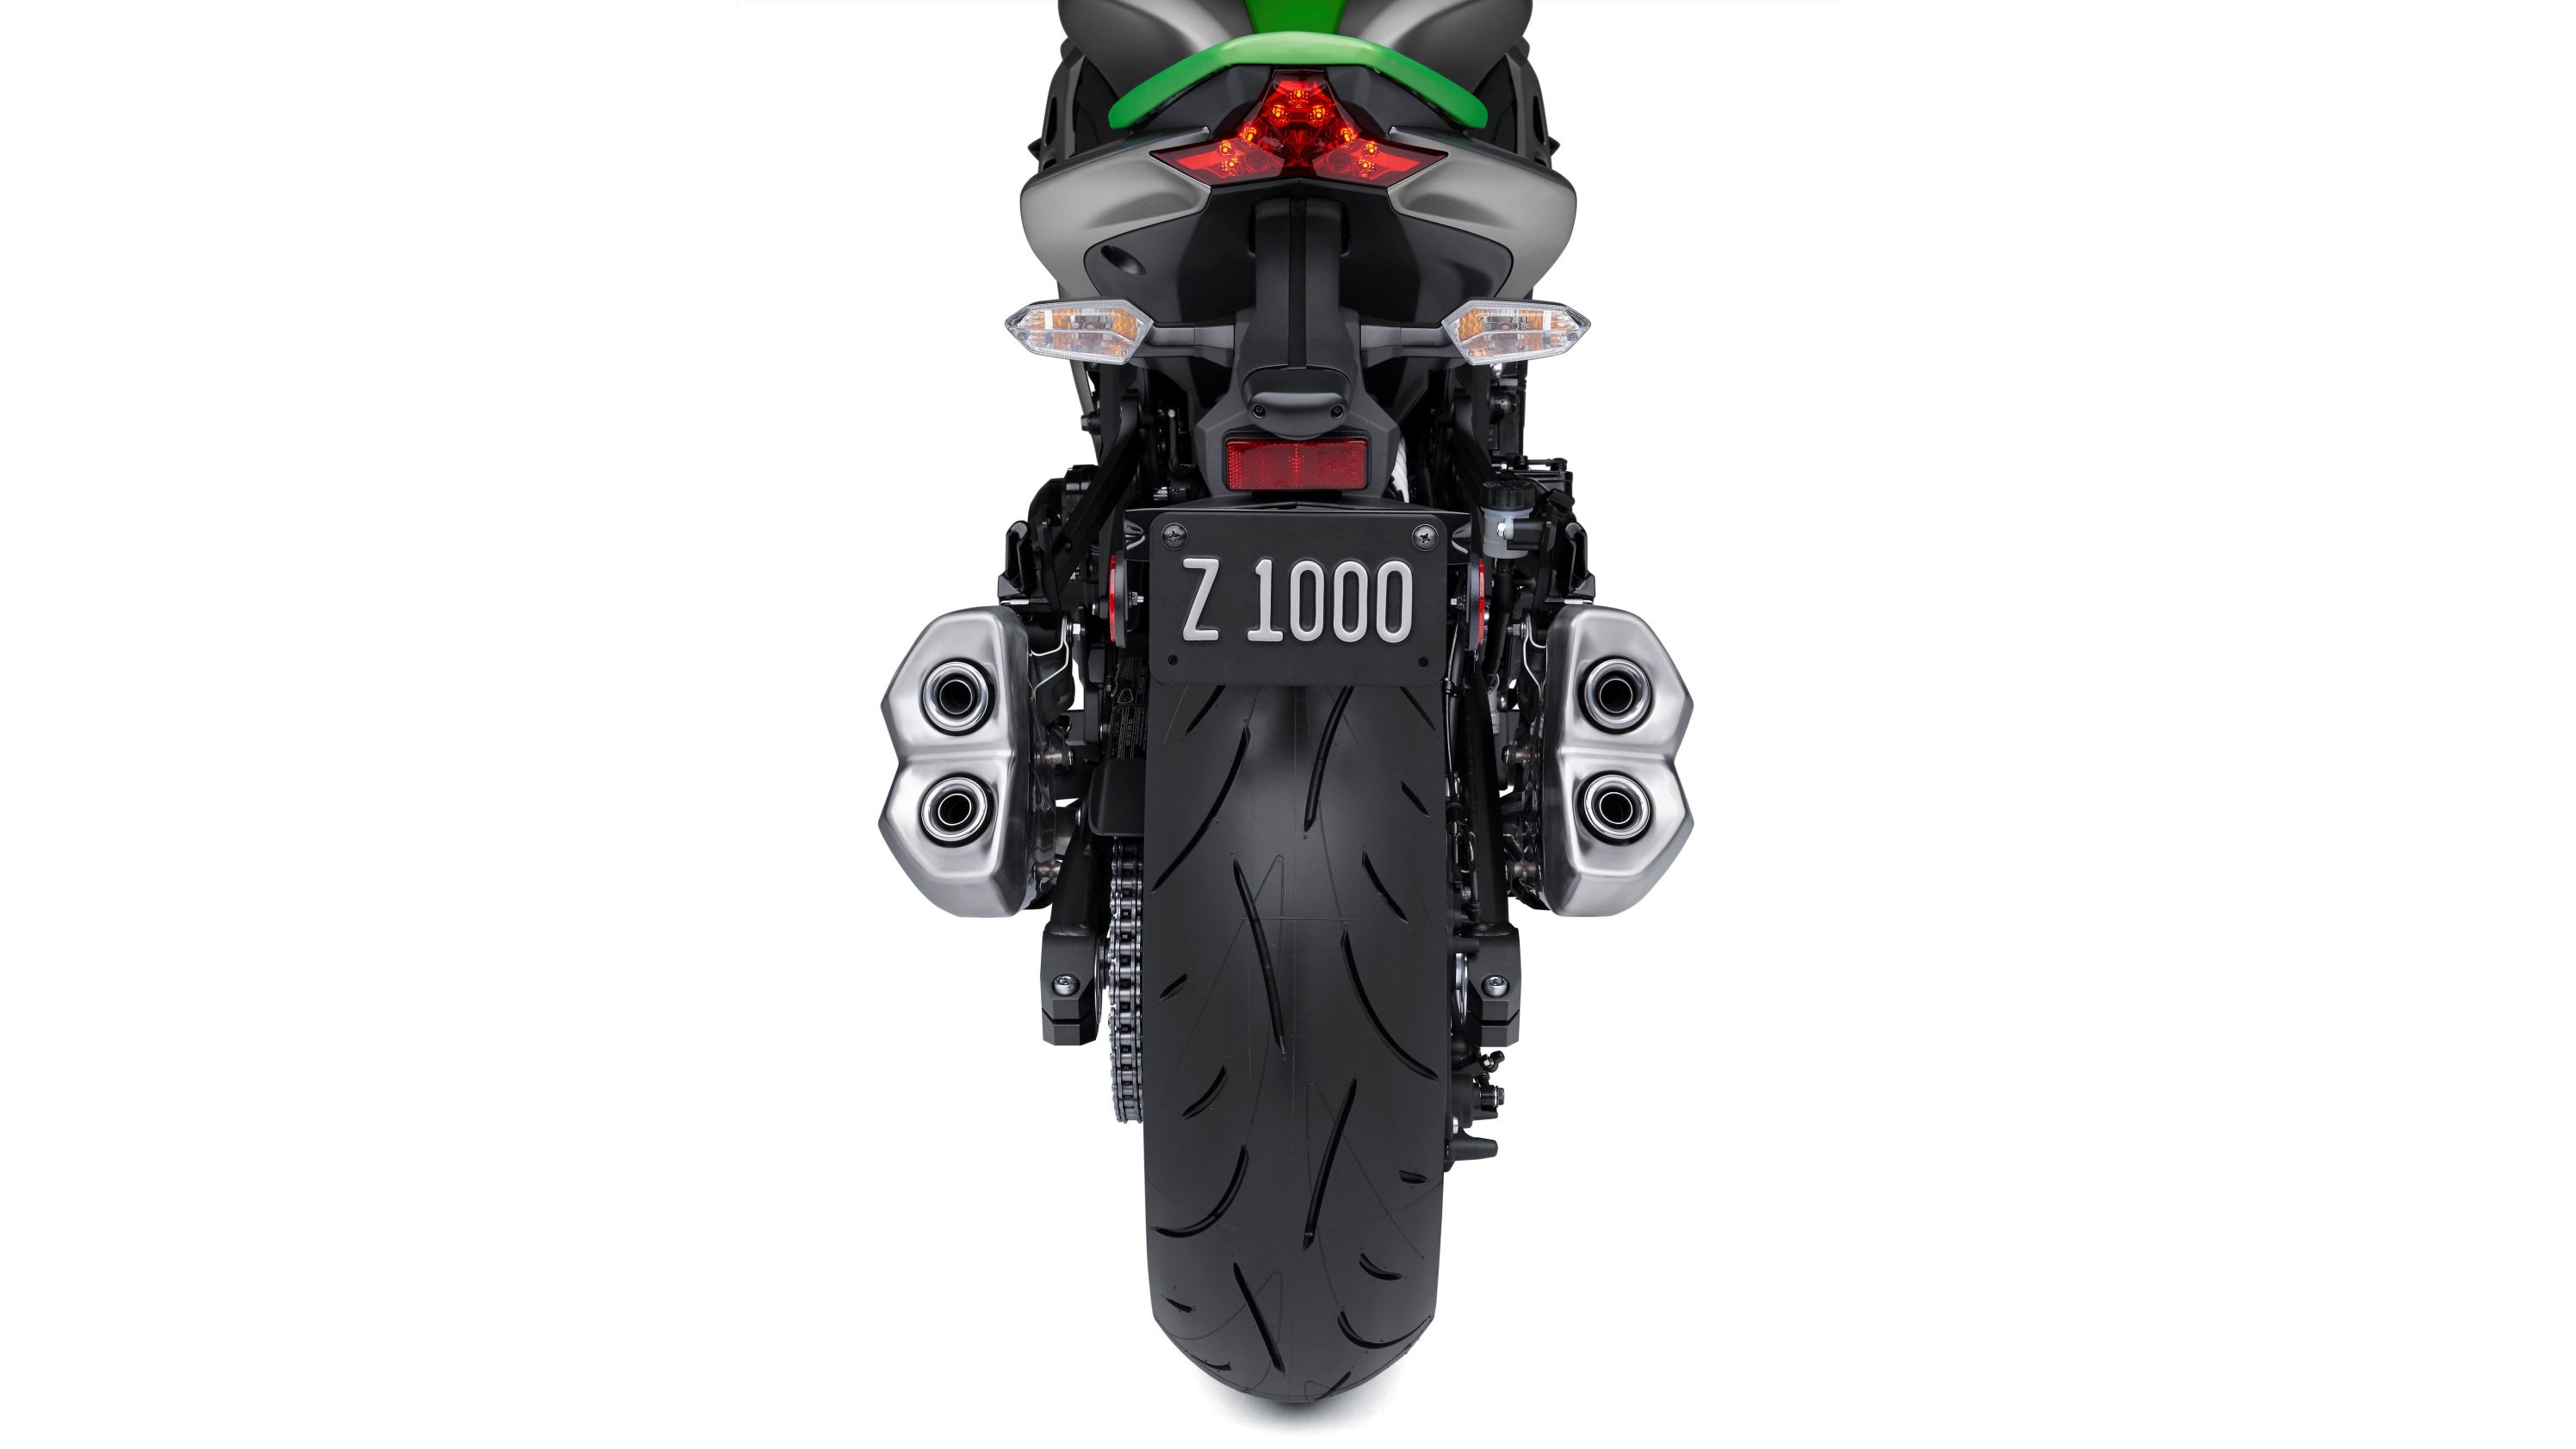 2014 - 2016 Kawasaki Z1000